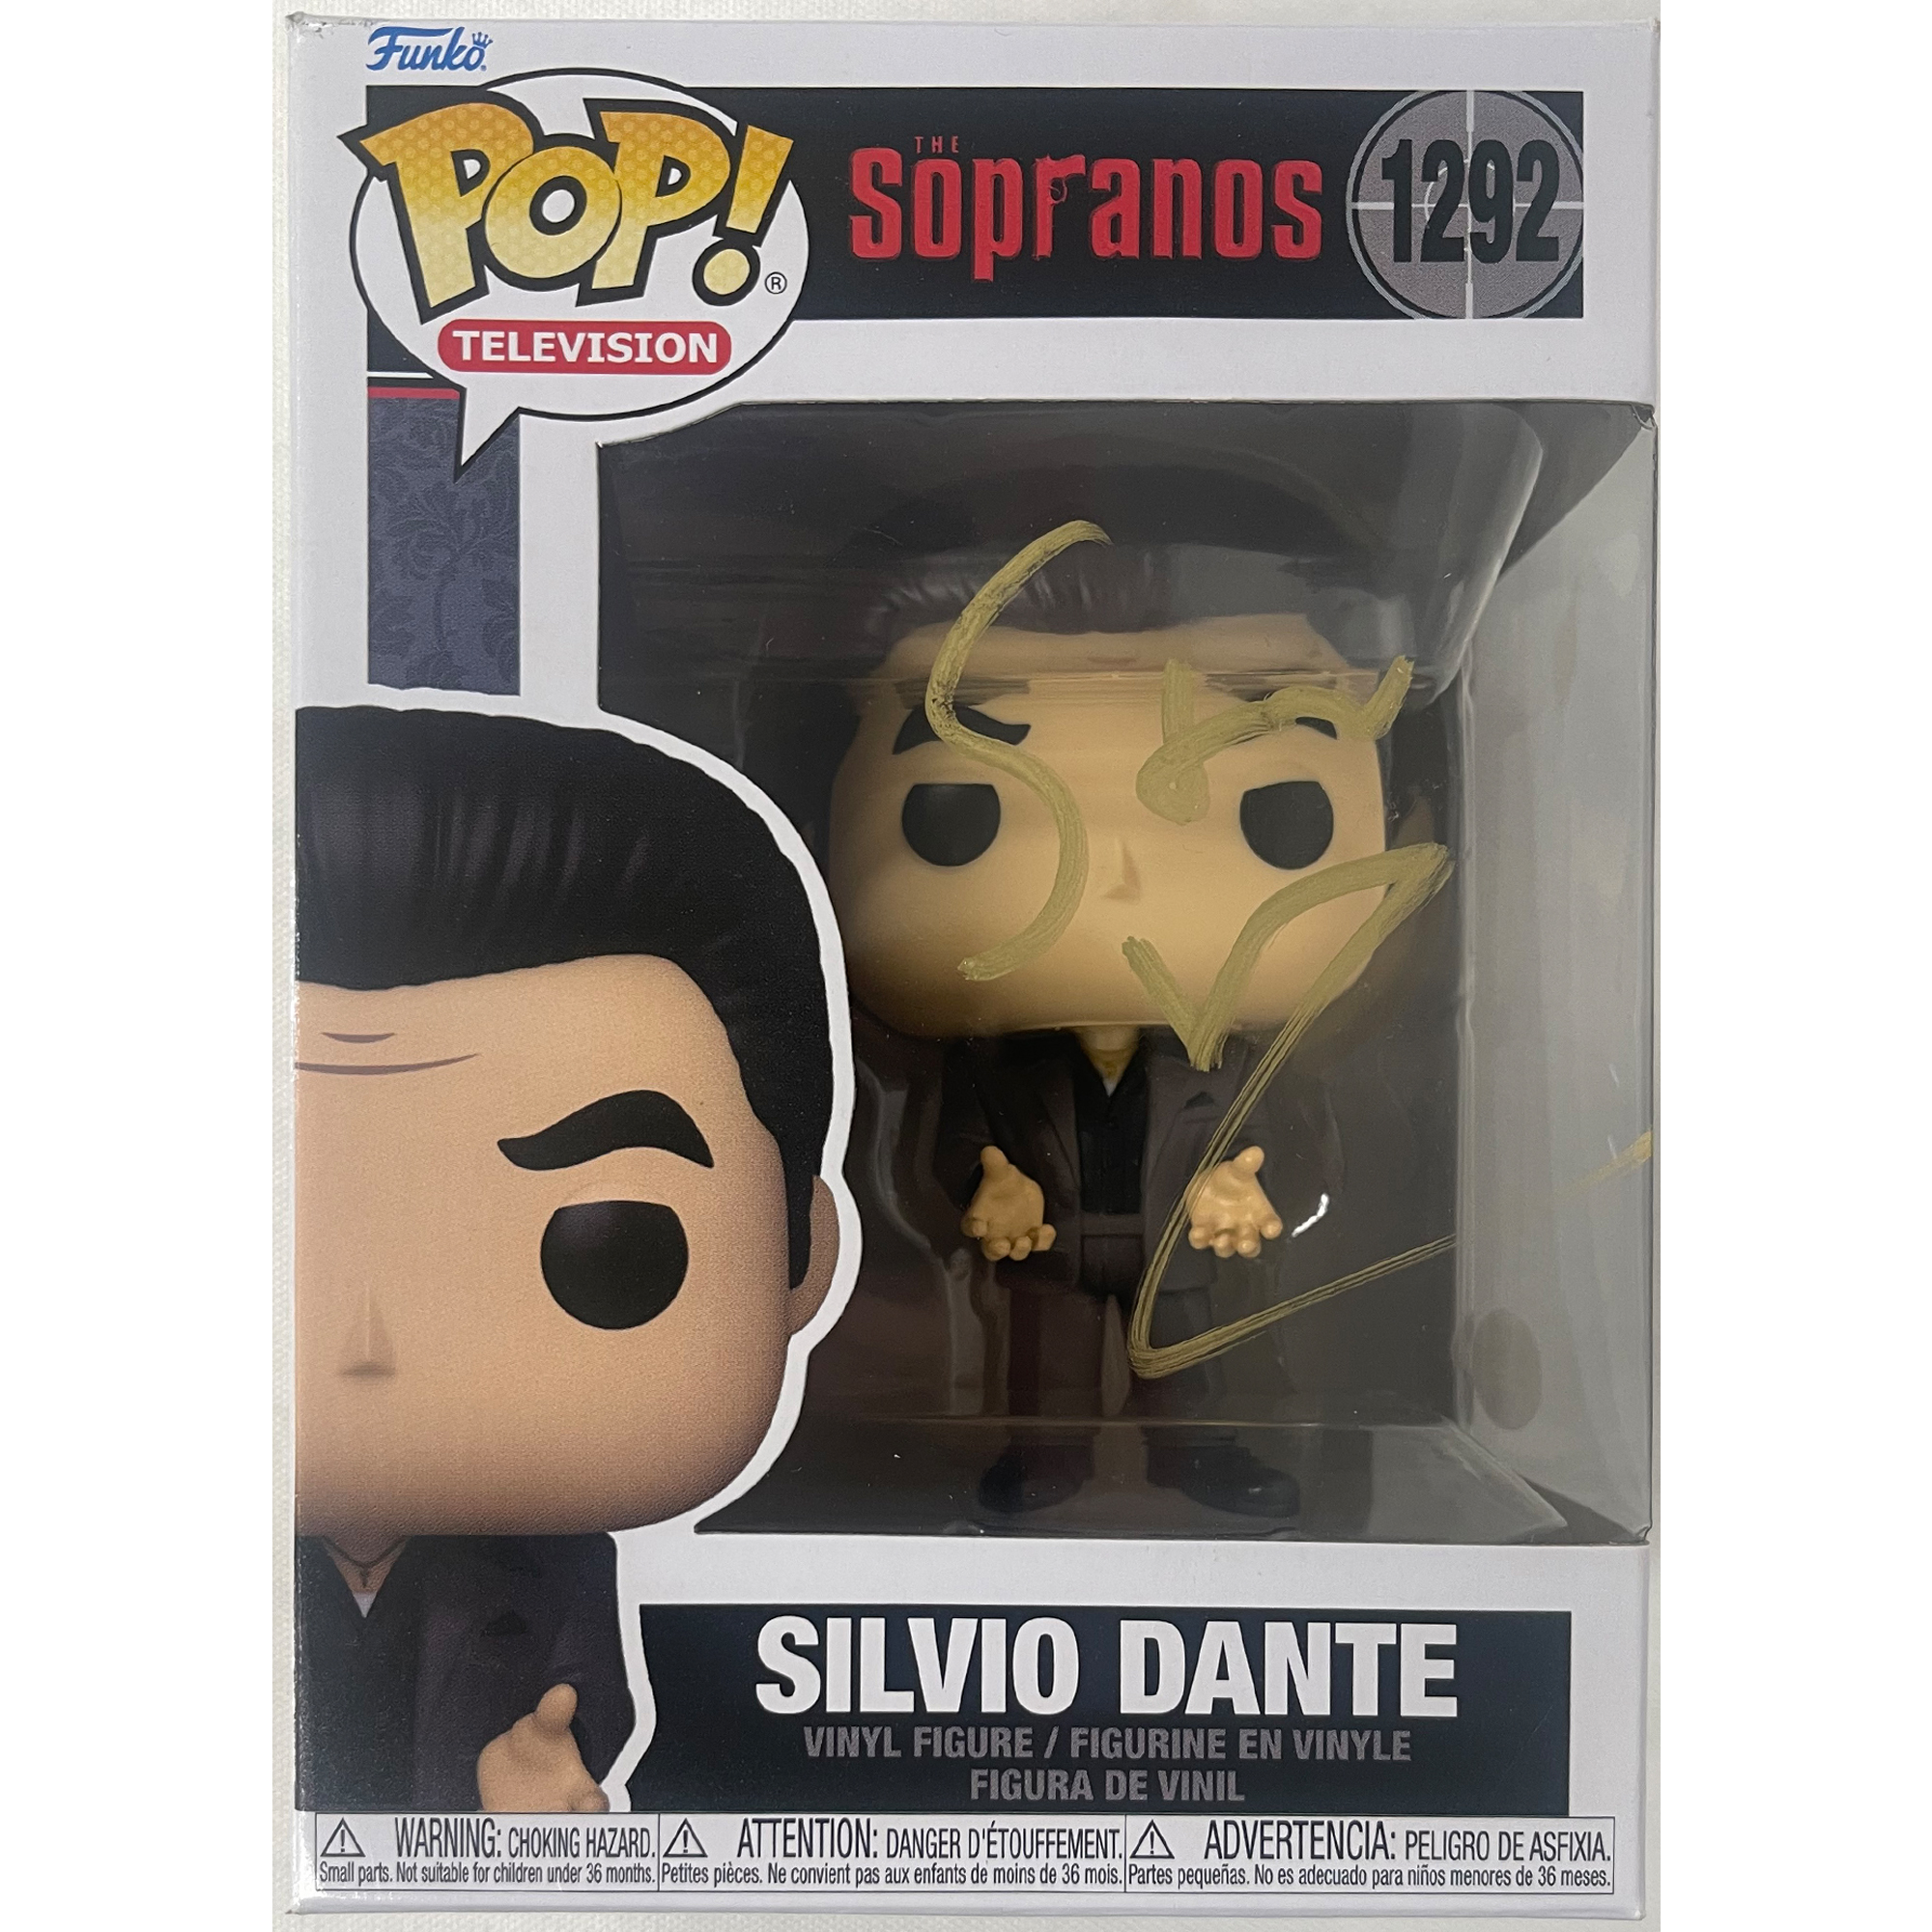 Steven Van Zandt Signed Silvio Dante “Sopranos” #1292 Funk...